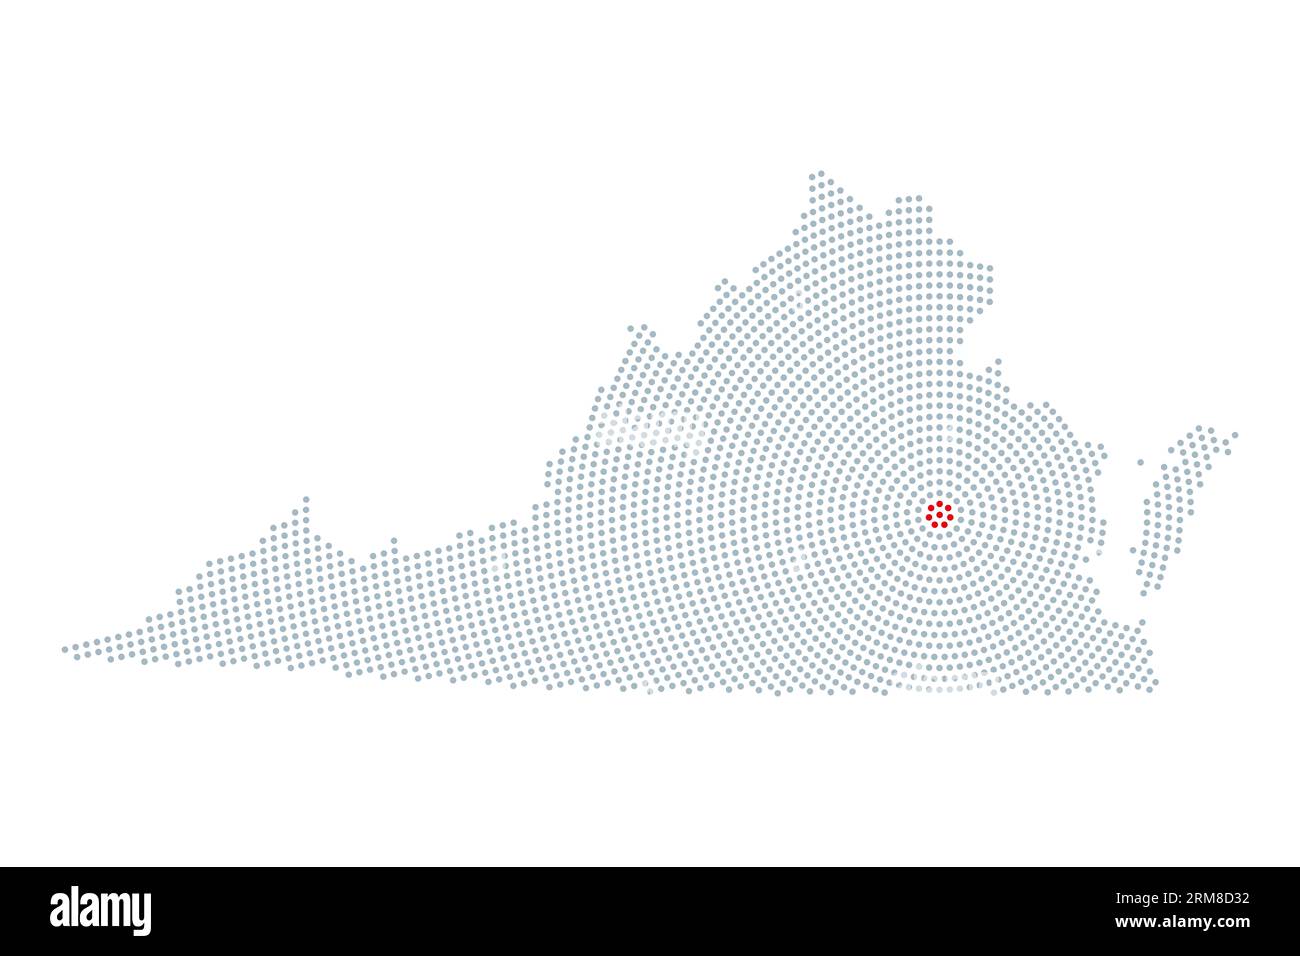 Virginia, sagoma dello stato degli Stati Uniti con motivo a punti radiali. Profilo del Commonwealth della Virginia, risultante da punti grigi, disposti in cerchi. Foto Stock